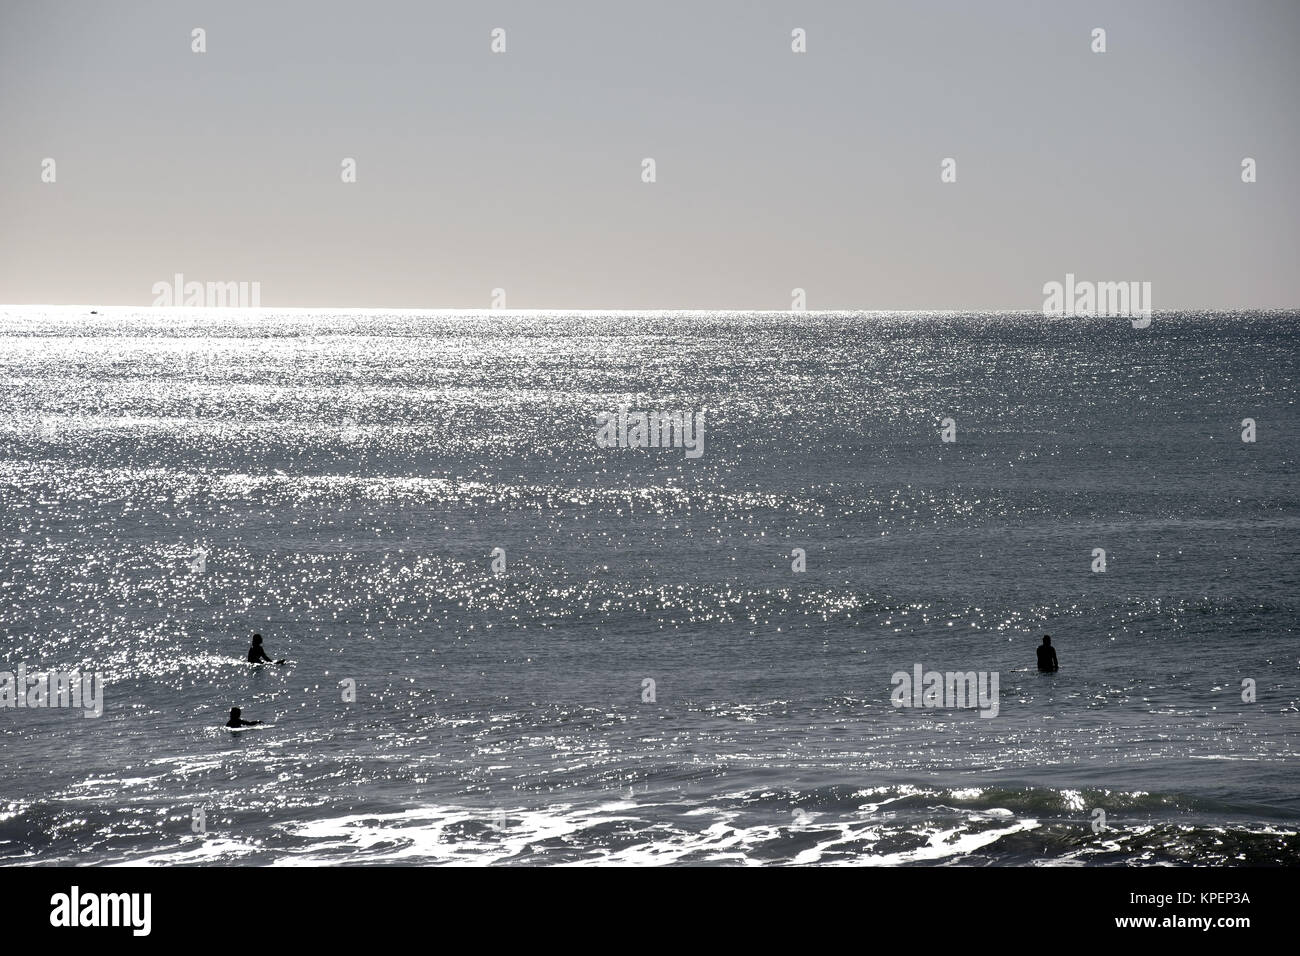 Die Silhouetten von Surfern auf dem Wasser im Gegenlicht am Strand von Oceanside, die auf Wellen warten. Stock Photo